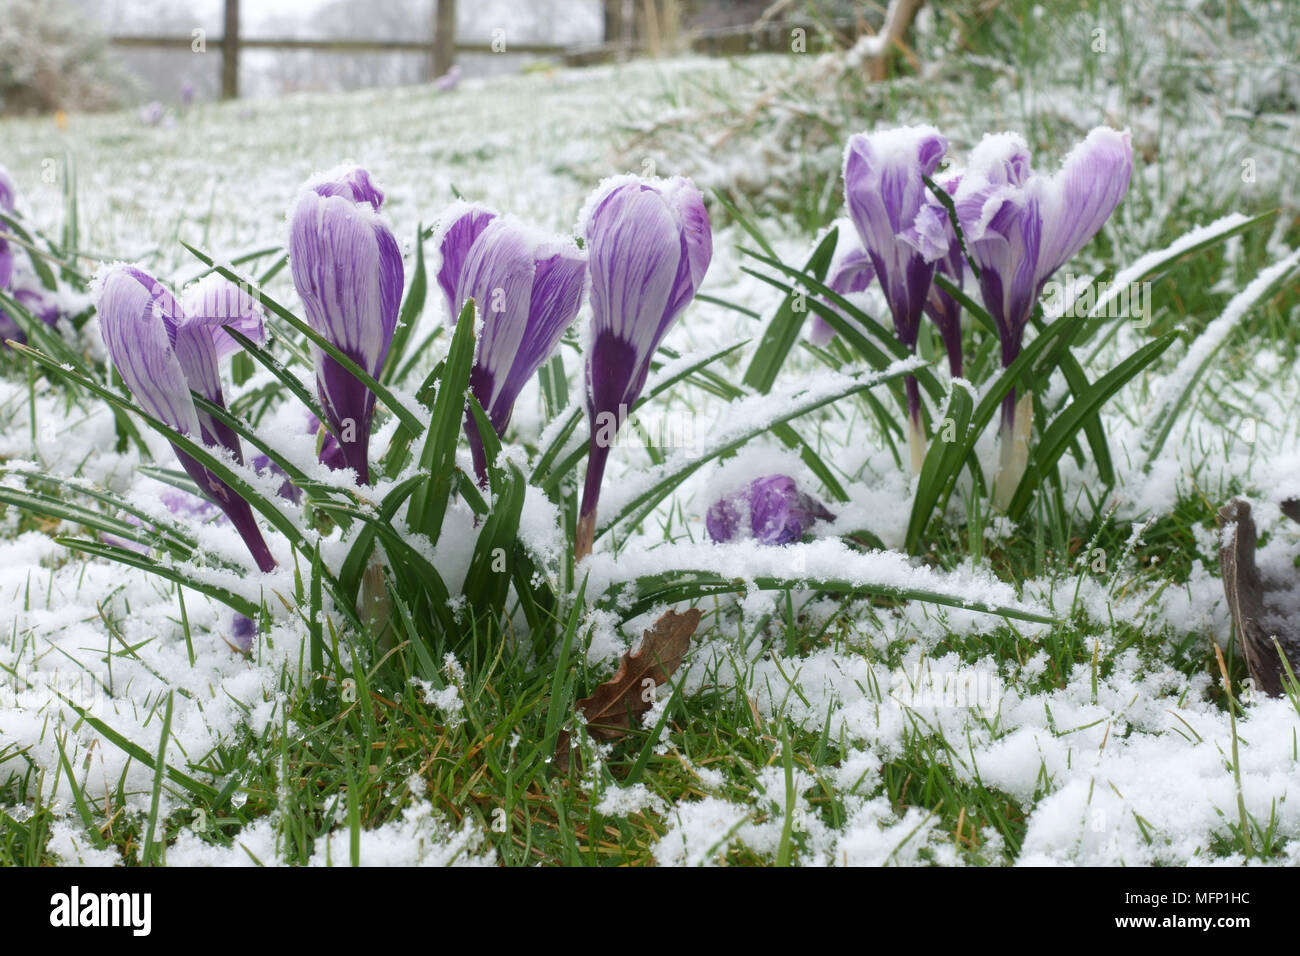 La neige légère poussière sur la floraison de grandes fleurs blanc et violet crocus 'Pickwick' en hiver, Berkshire, Mars Banque D'Images